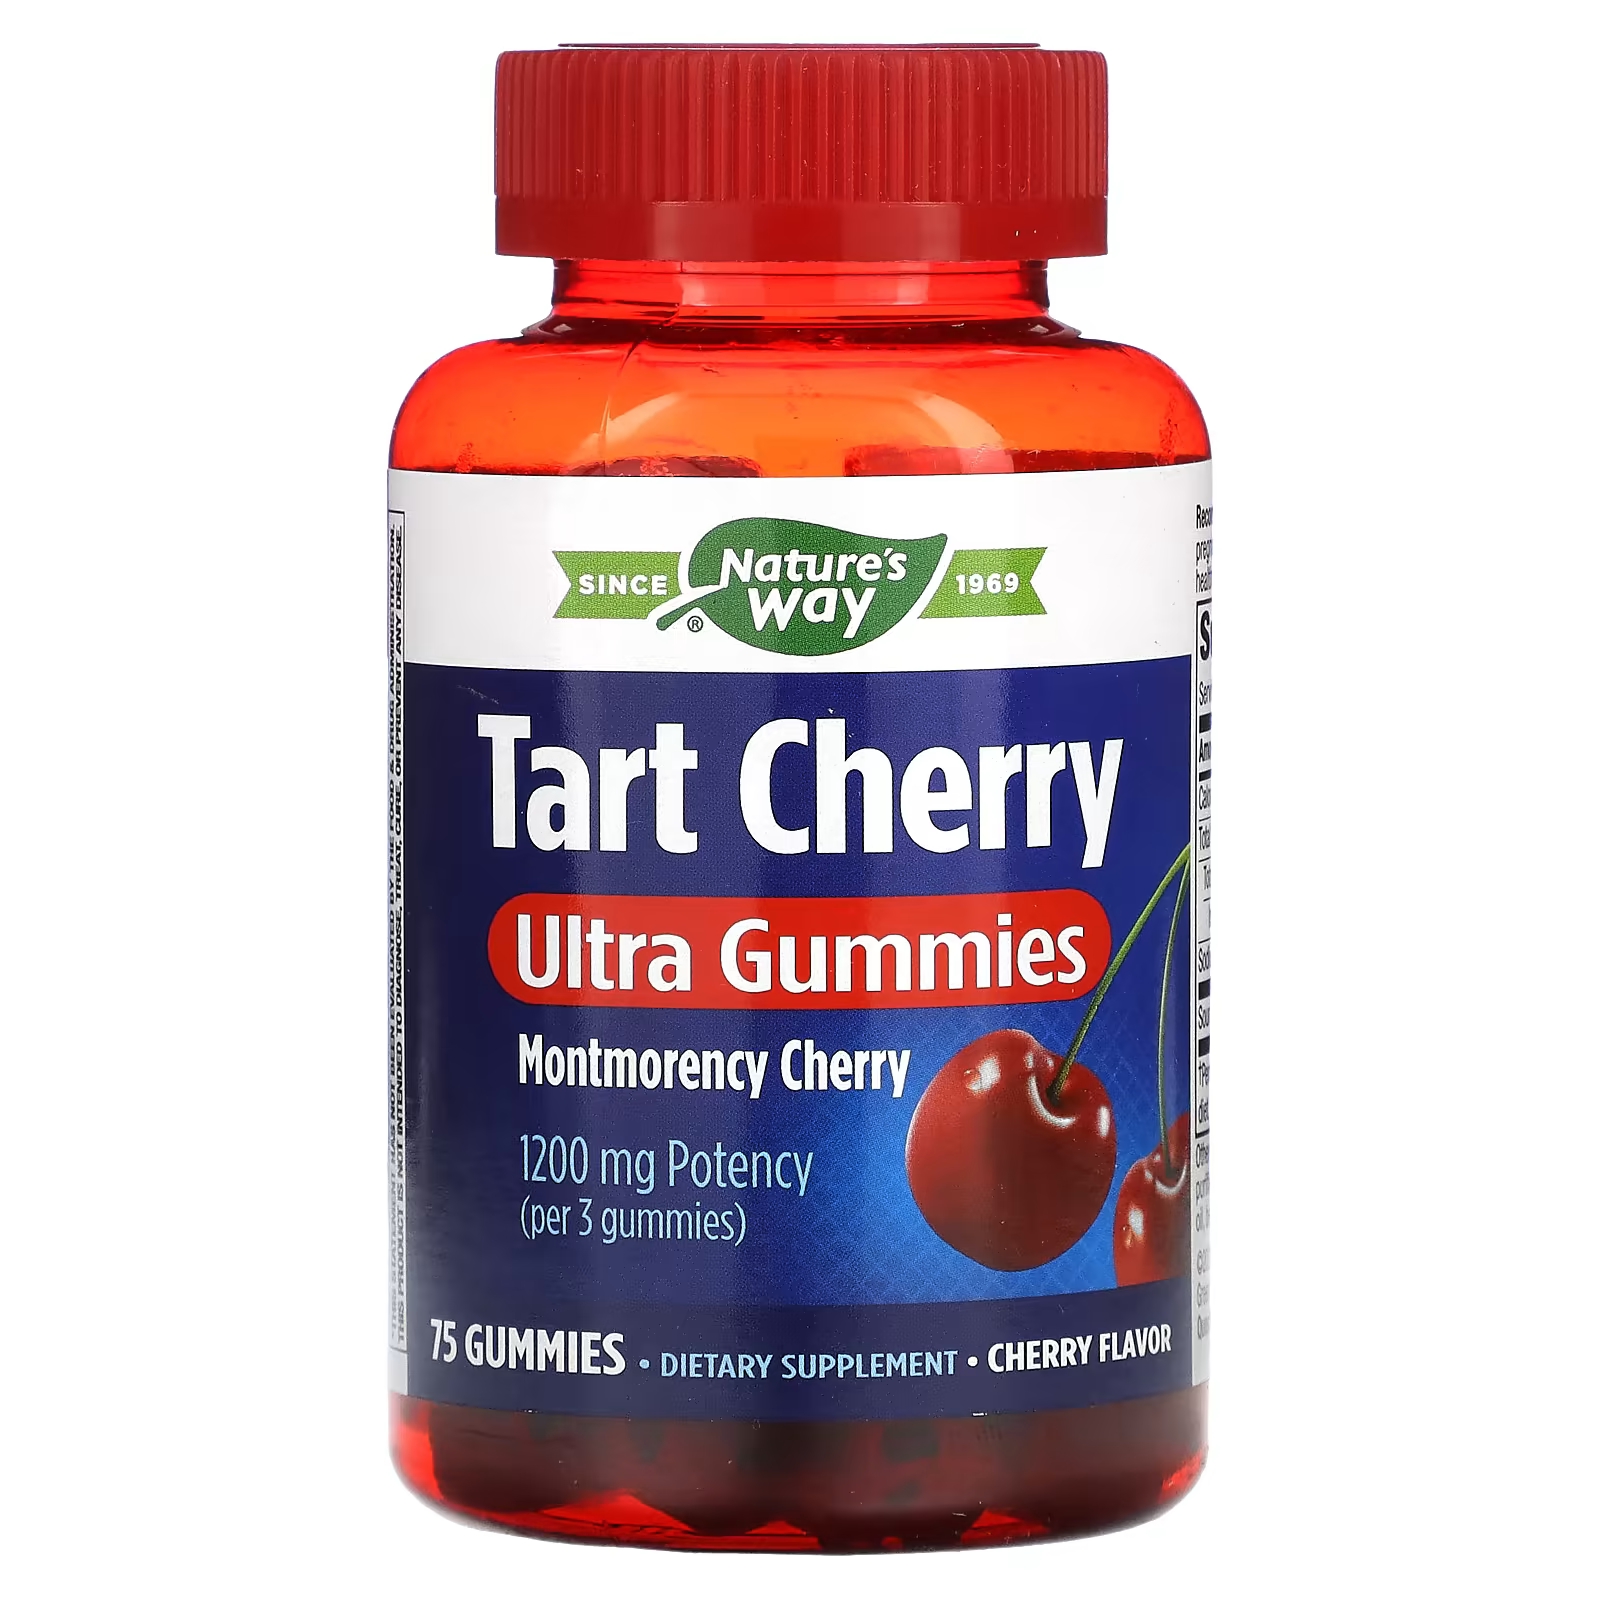 Пищевая добавка Nature's Way Tart Cherry Ultra Gummies Cherry 1200 мг, 75 жевательных конфет цистэль кидс со вкусом вишни gls таблетки жевательные 2 4г 20шт